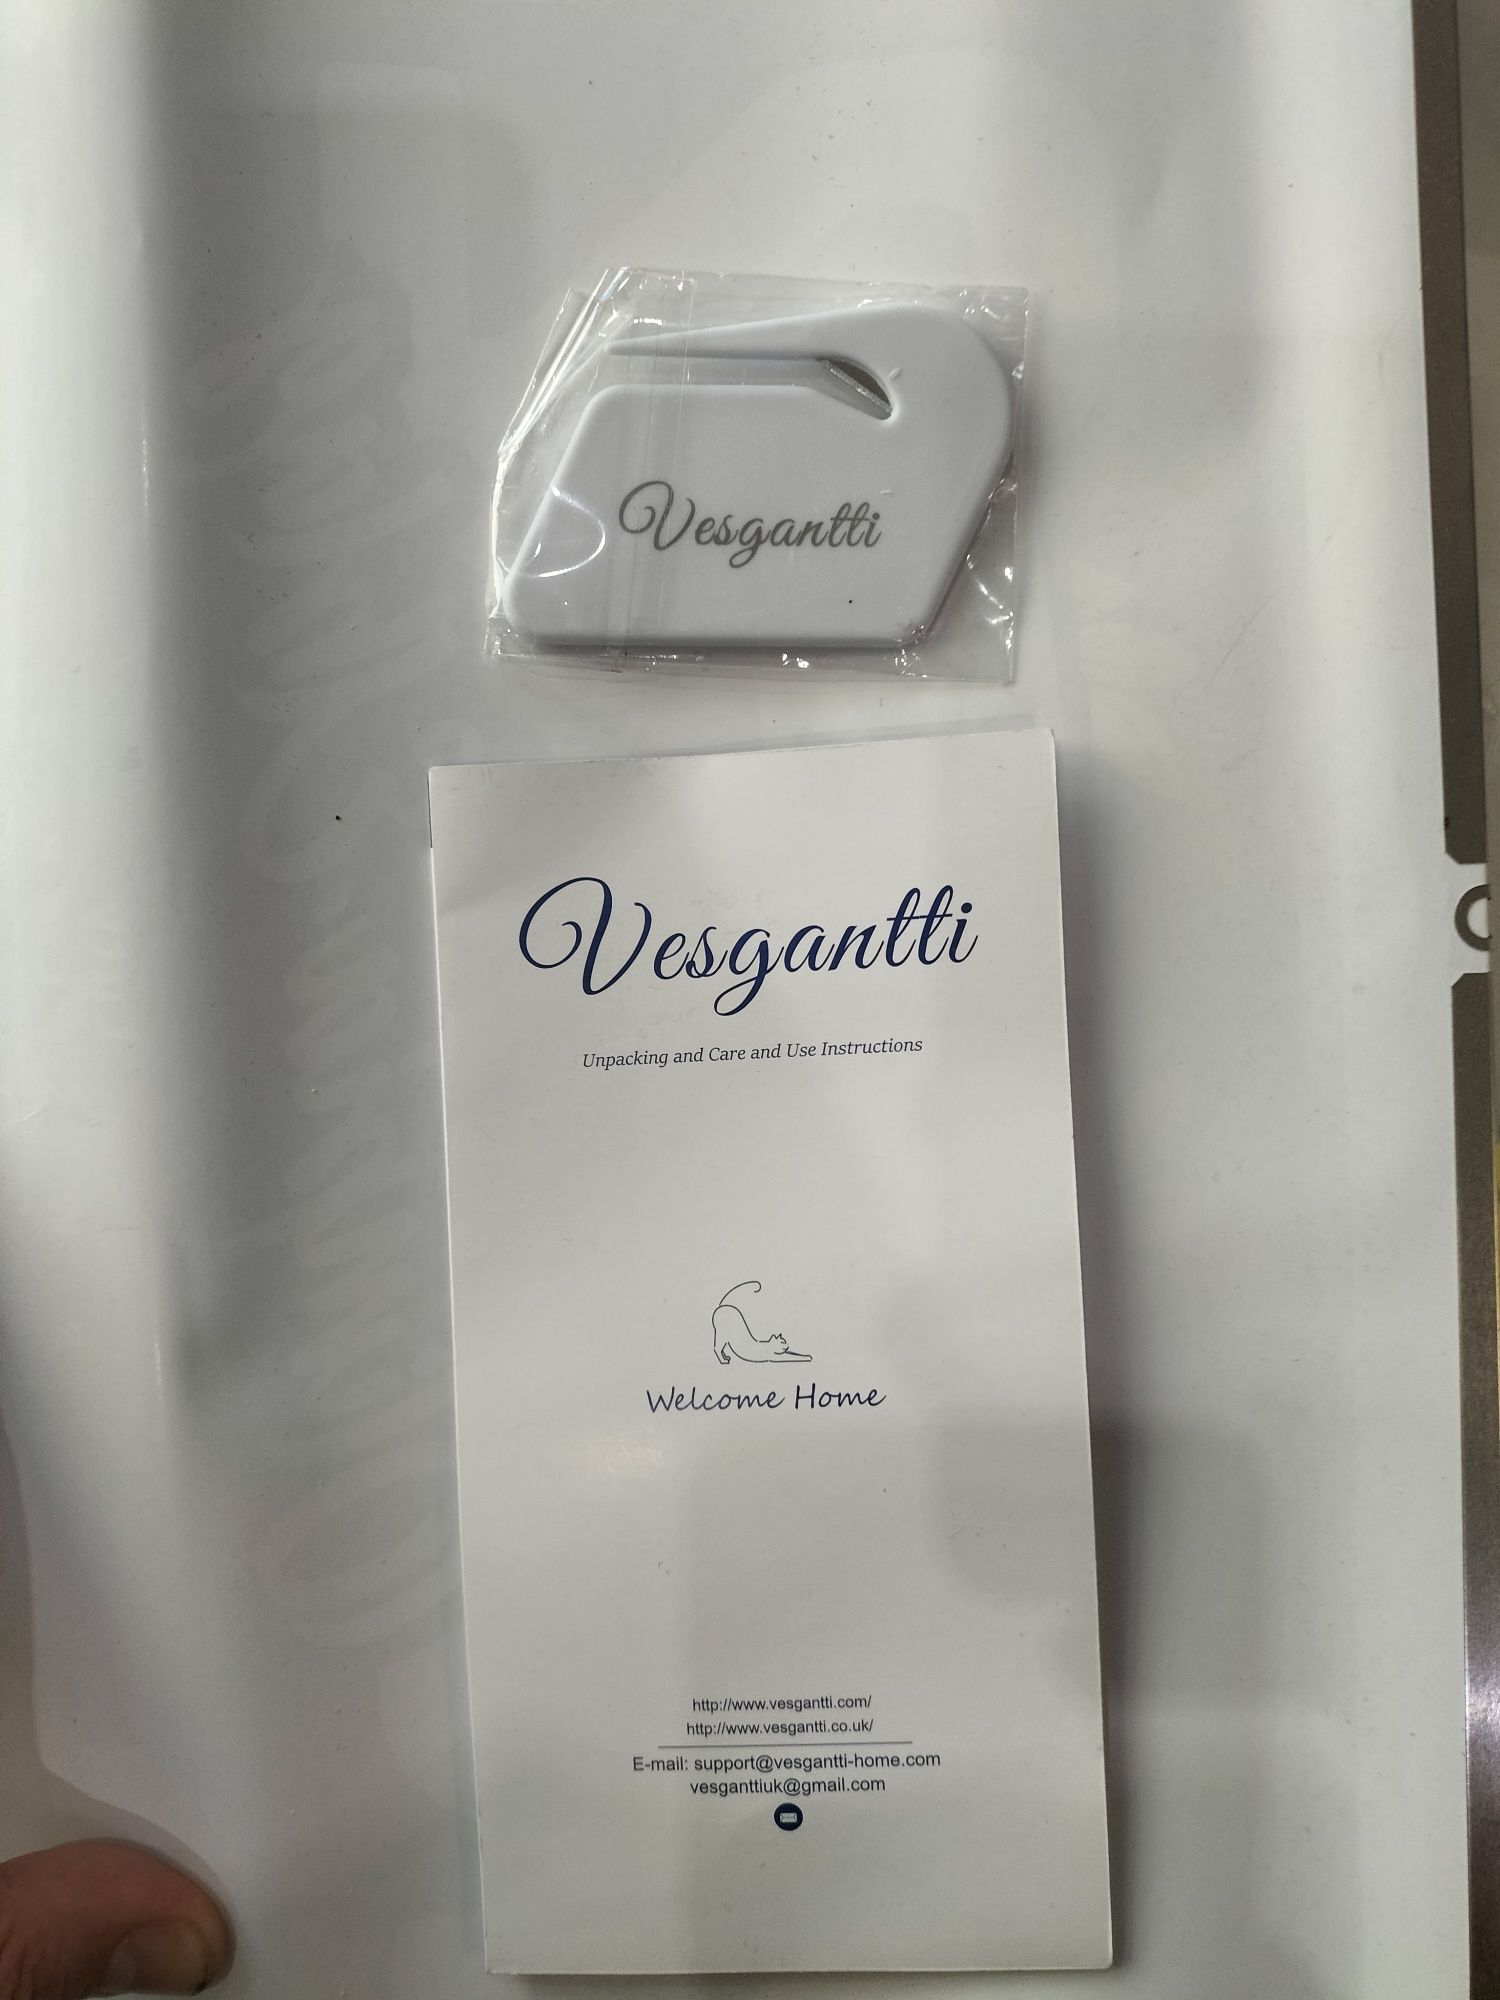 Oryginalny materac hybrydowy Vesgantti 9,4 cala z serii Tight Top Matt